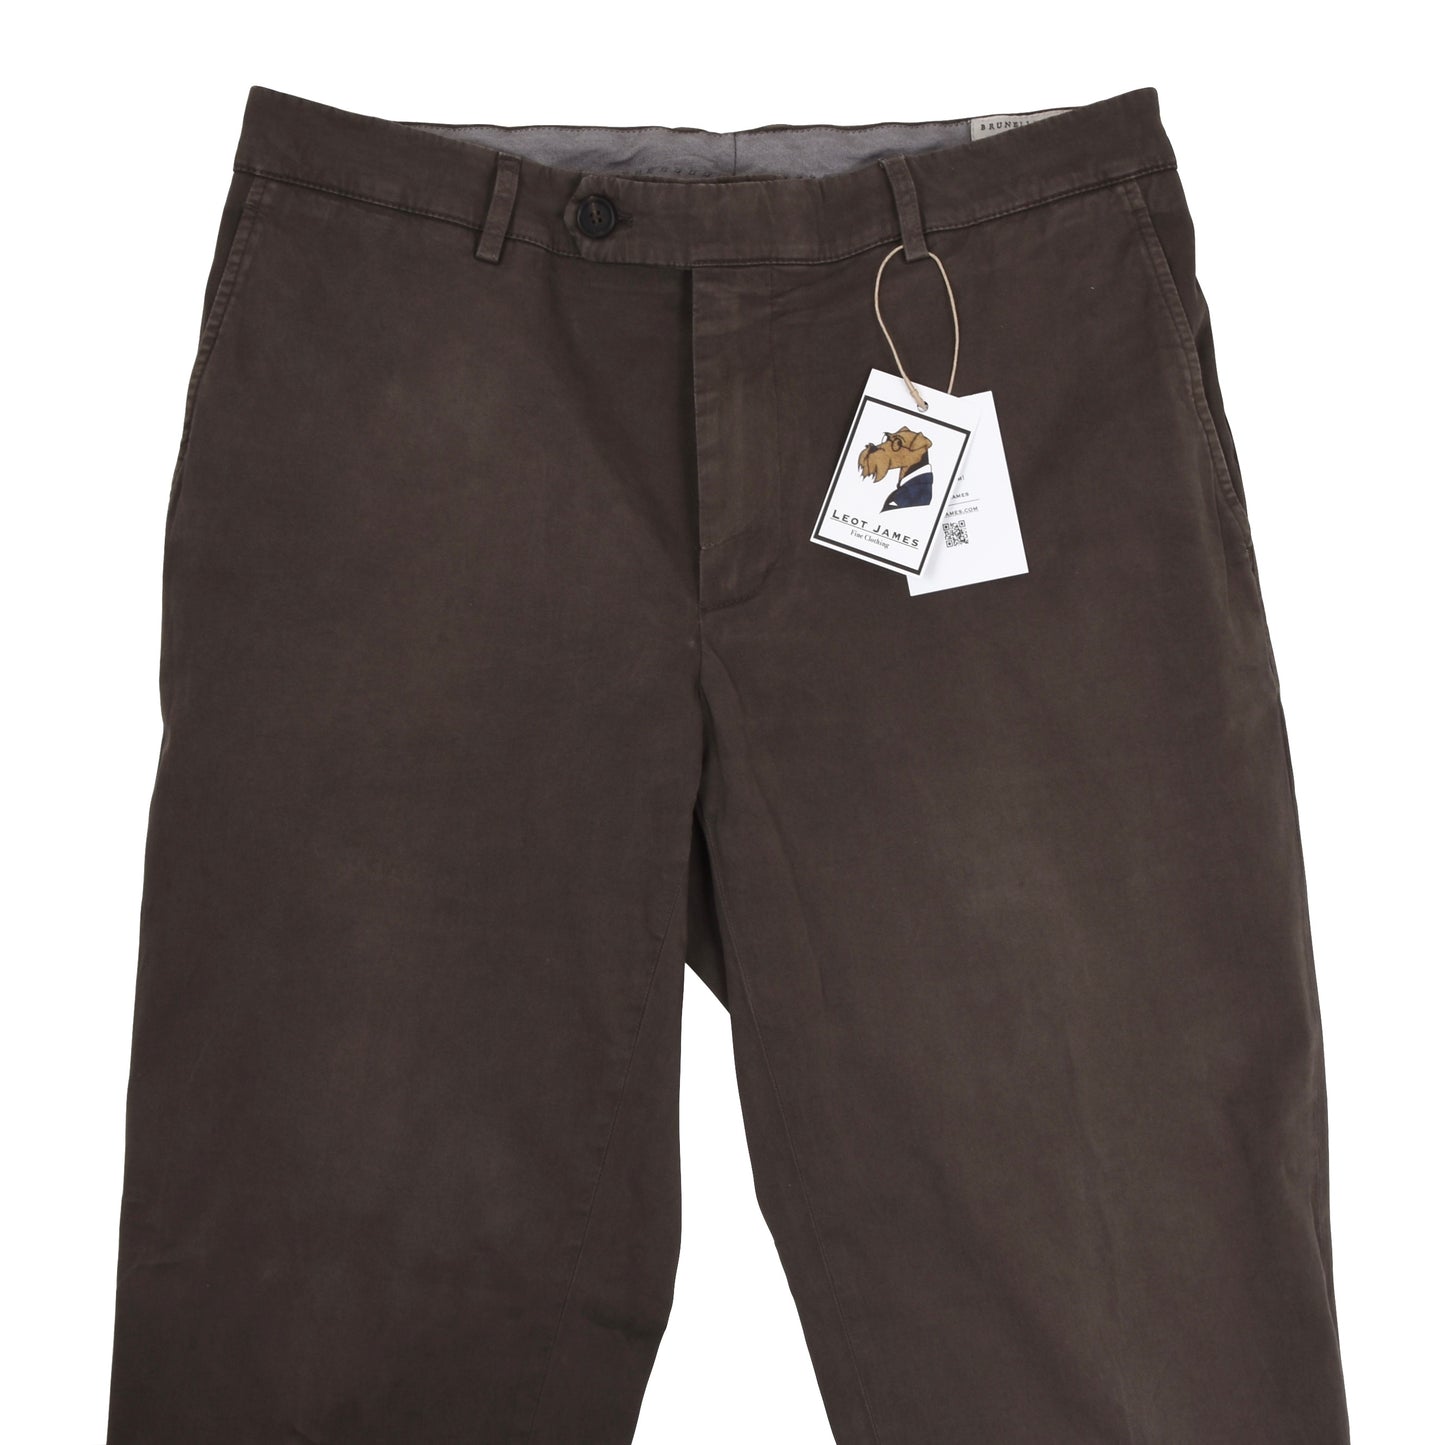 Brunello Cucinelli Cotton Pants Size 52 - Brown